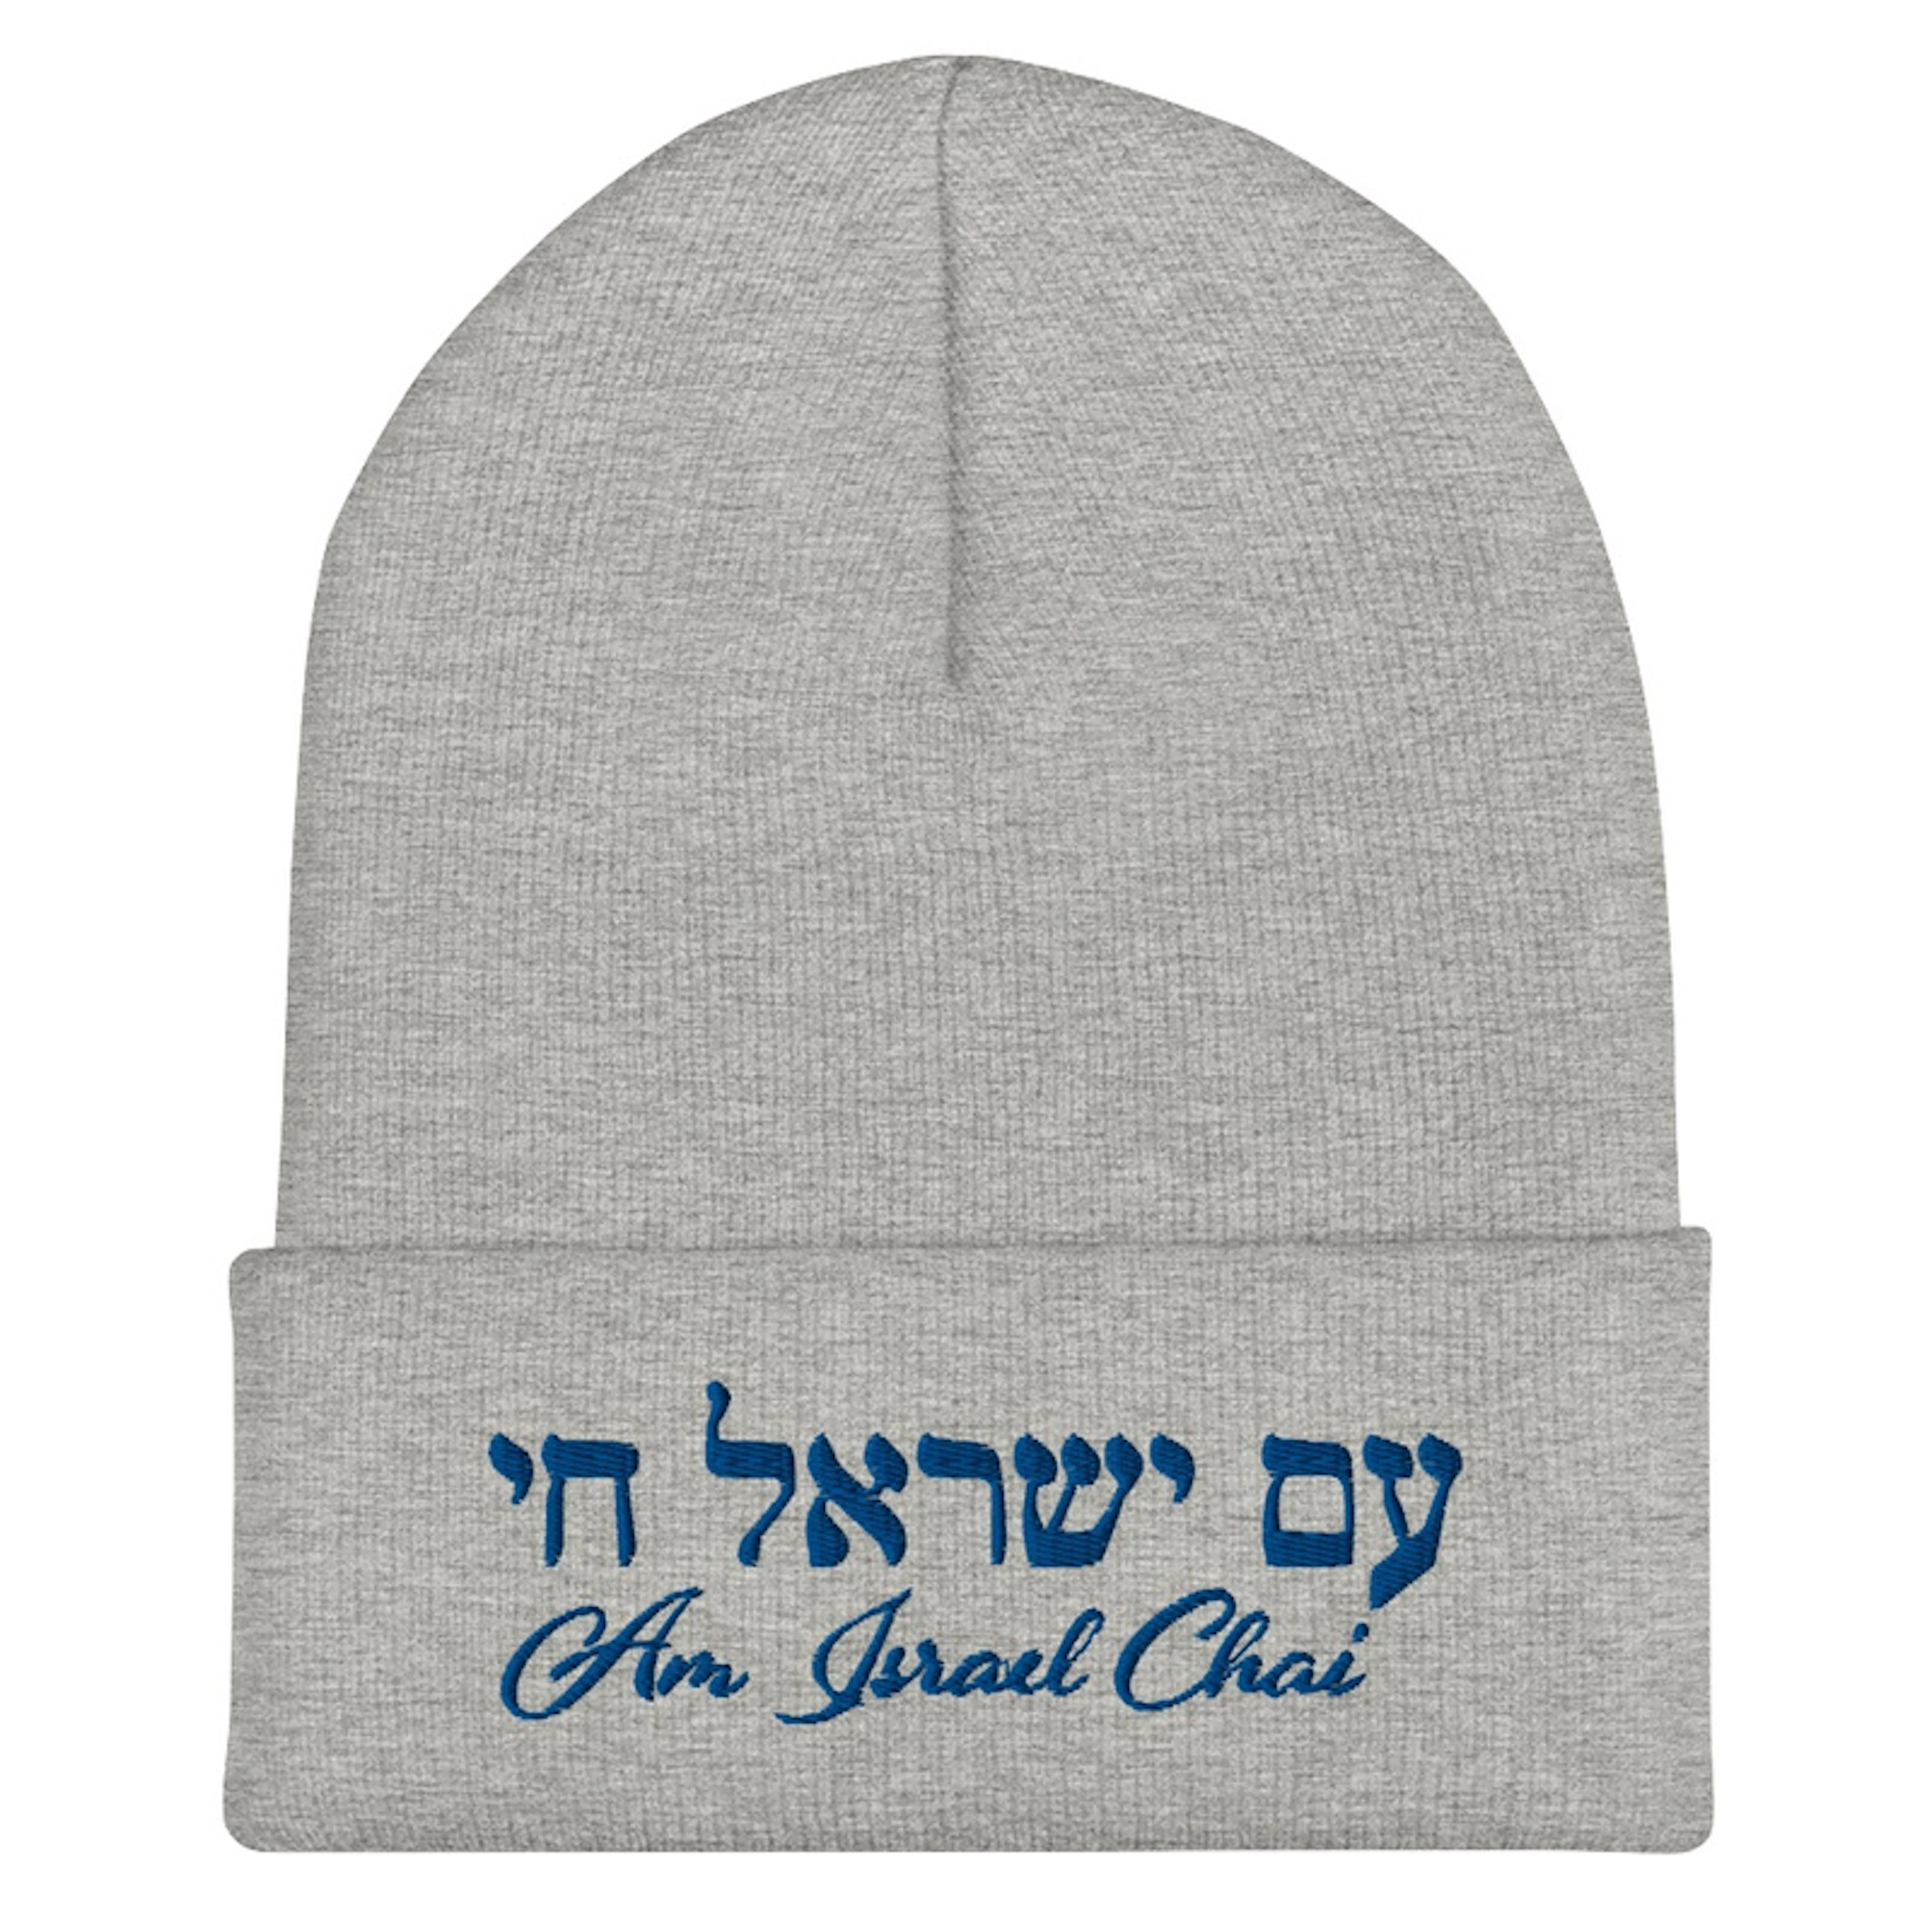 AM ISRAEL CHAI Beanie Hat